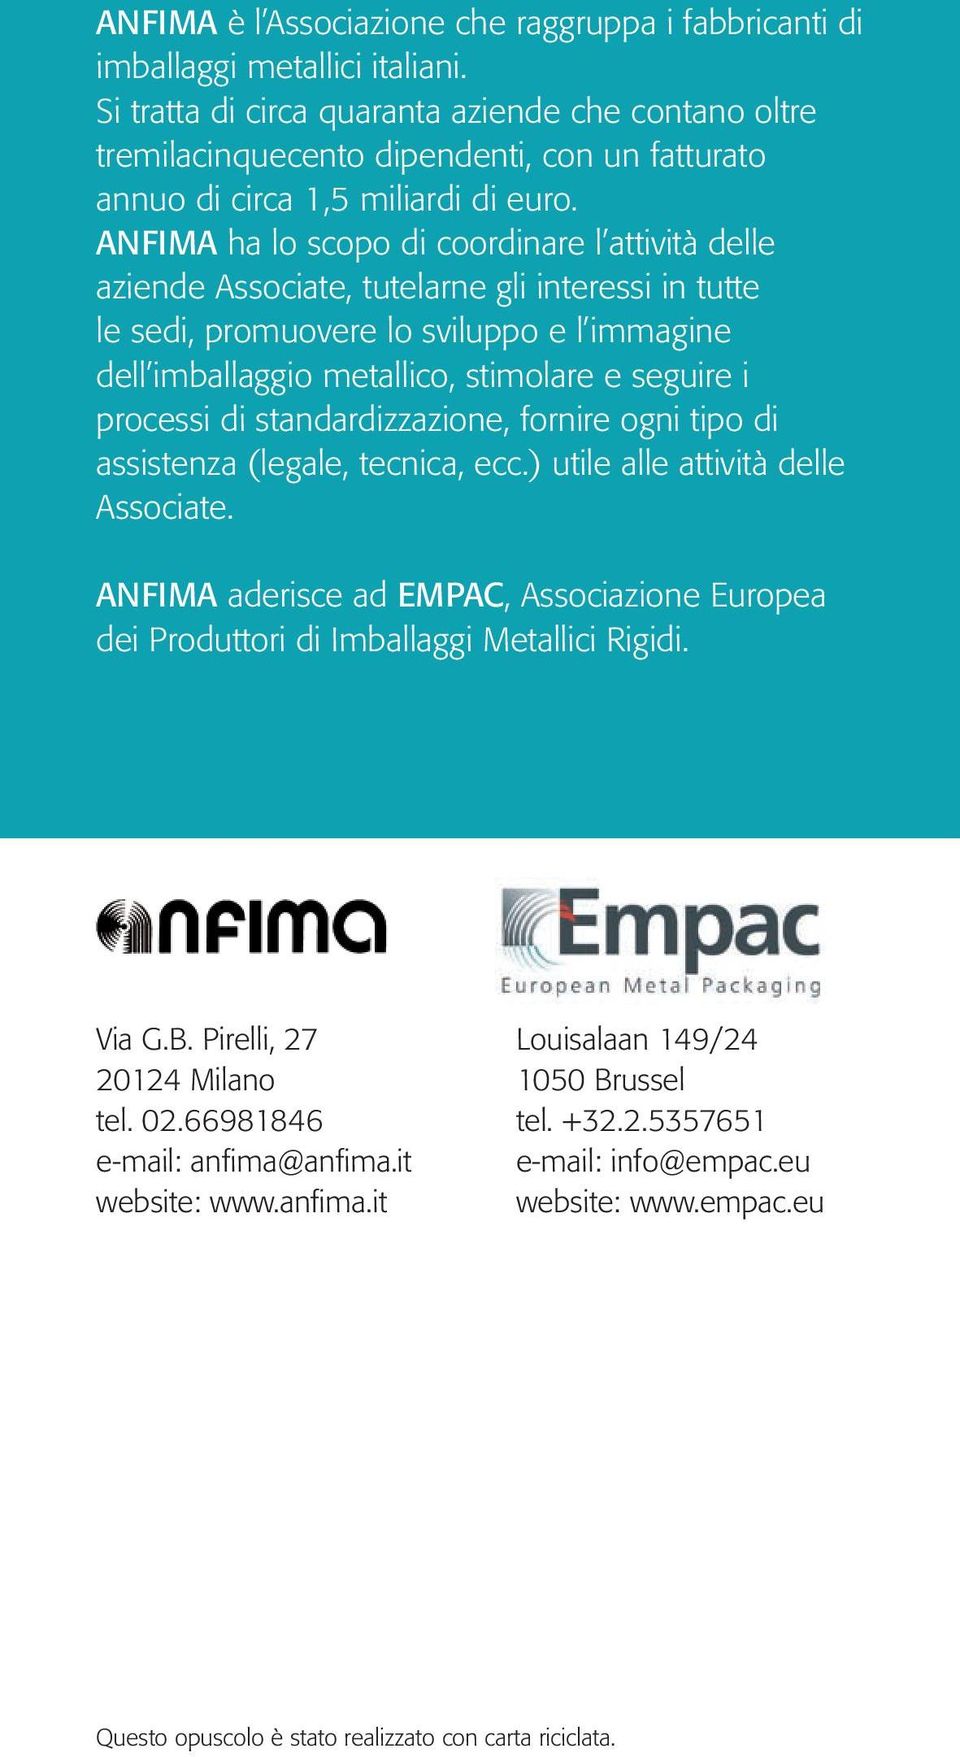 ANFIMA ha lo scopo di coordinare l attività delle aziende Associate, tutelarne gli interessi in tutte le sedi, promuovere lo sviluppo e l immagine dell imballaggio metallico, stimolare e seguire i